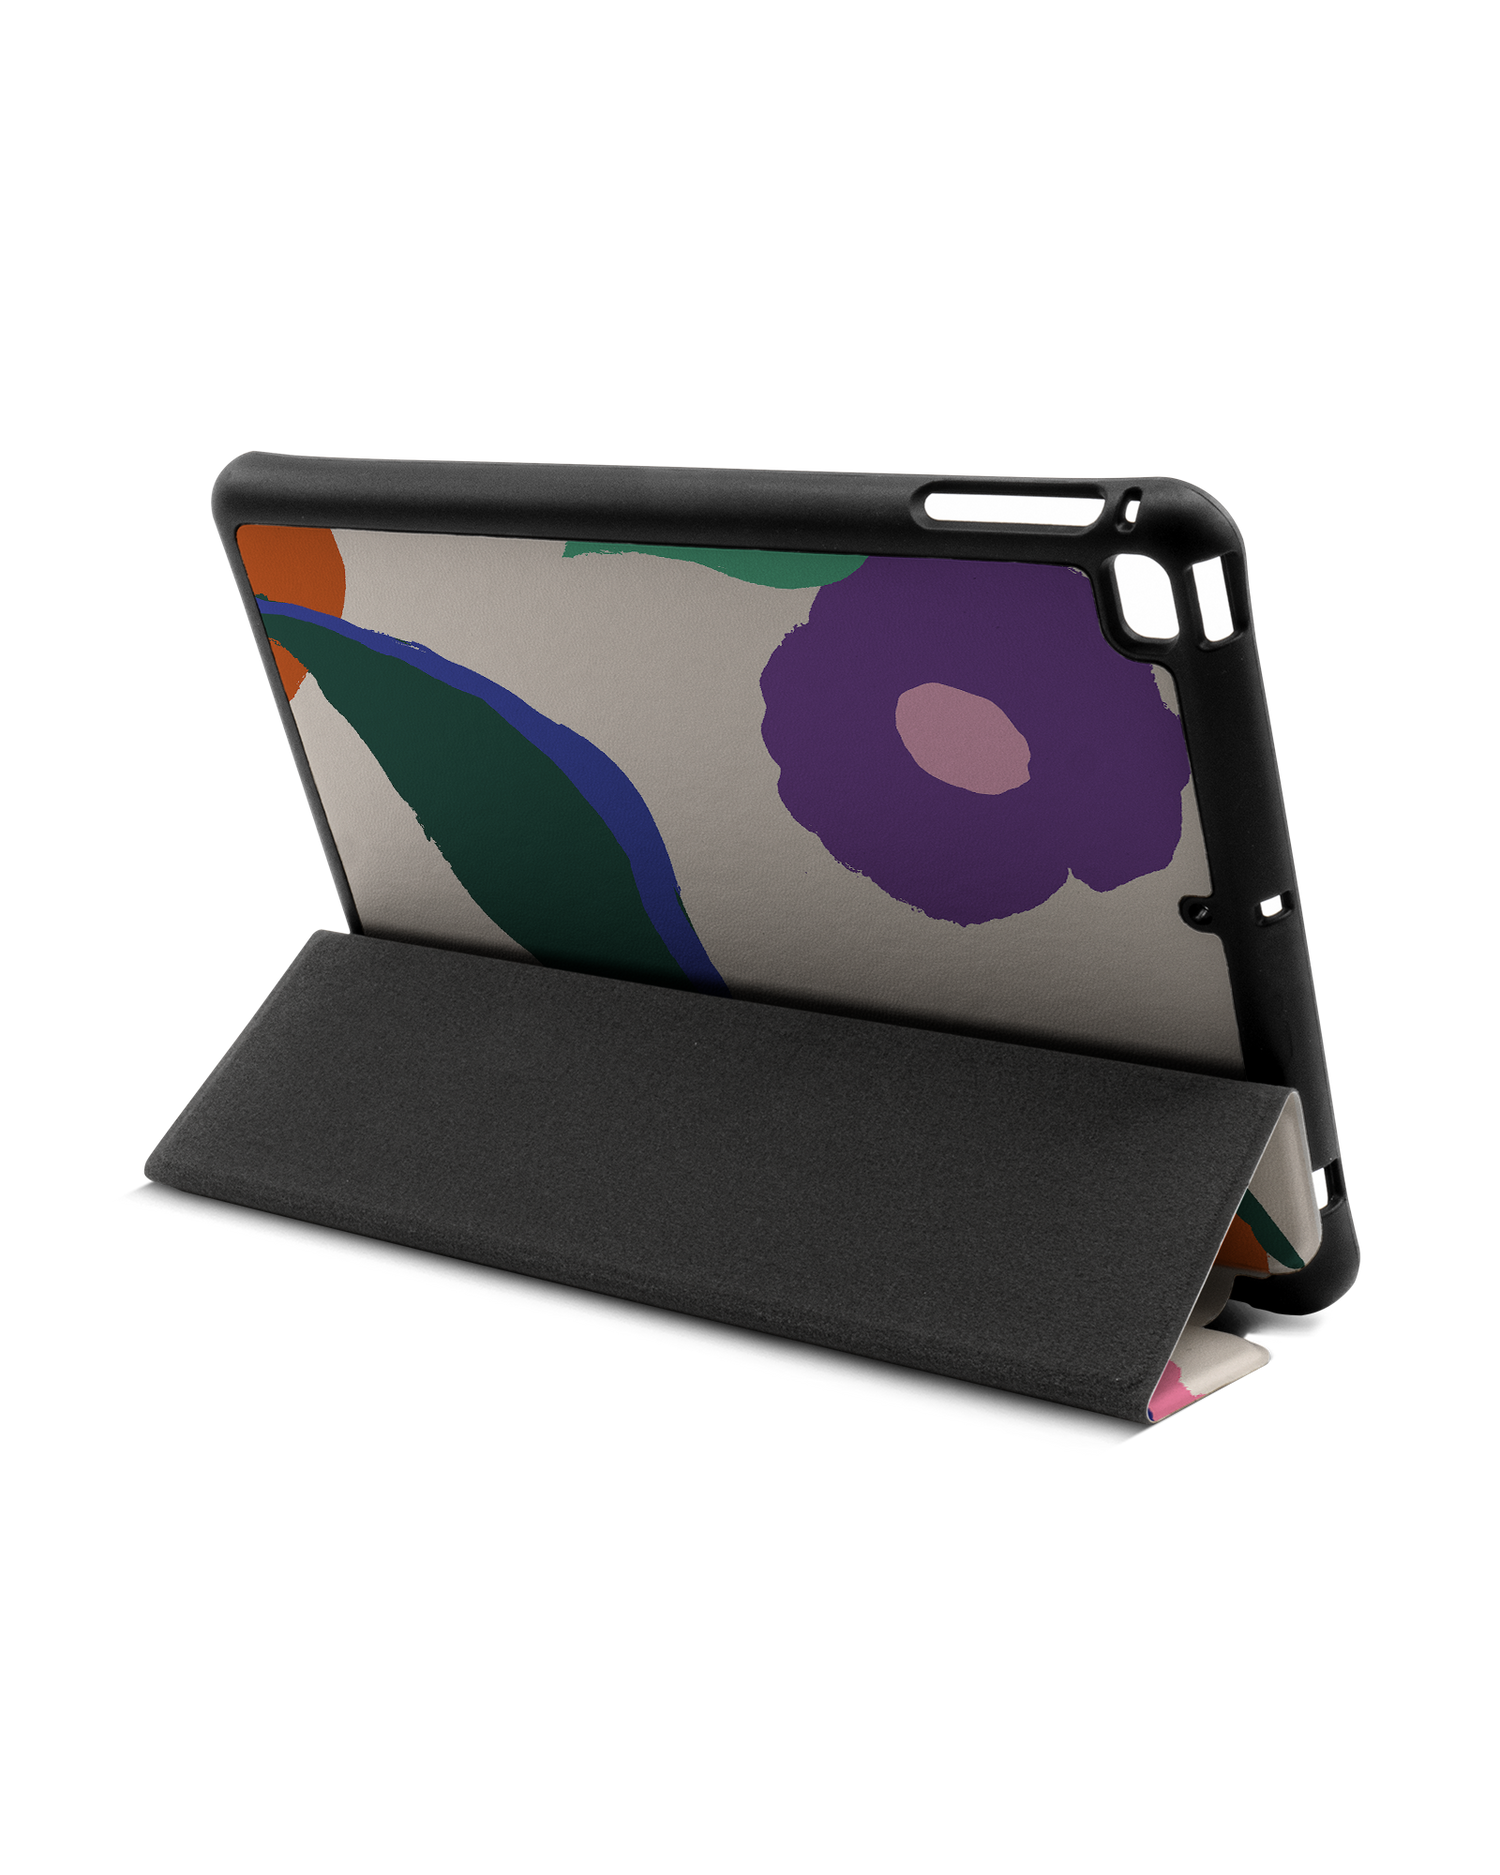 Handpainted Blooms iPad Hülle mit Stifthalter Apple iPad mini 5 (2019): Aufgestellt im Querformat von hinten